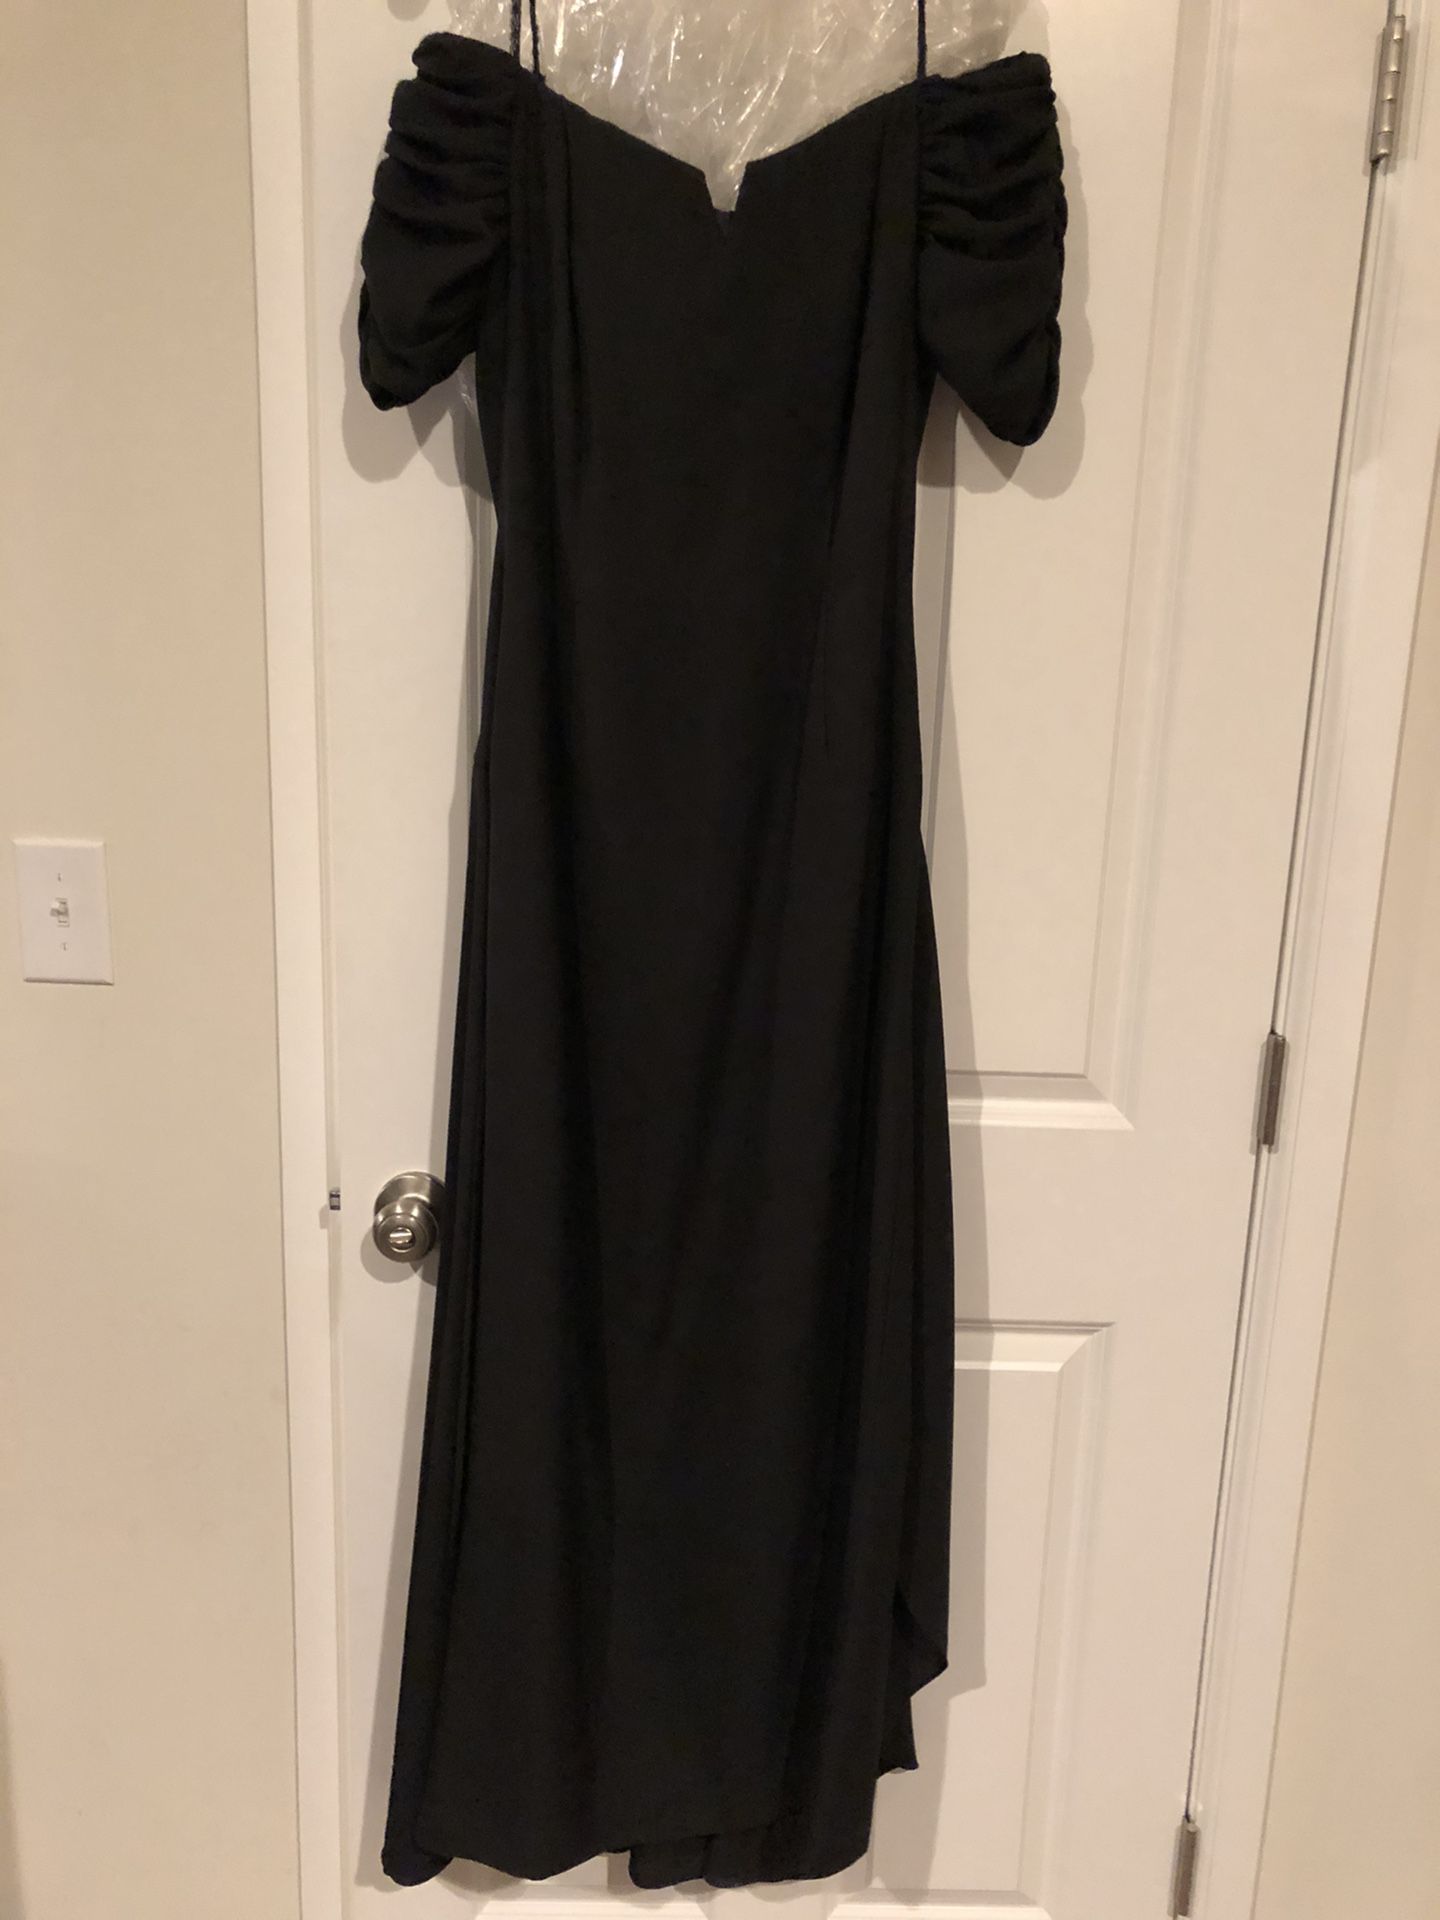 Black off-shoulder gown size 8